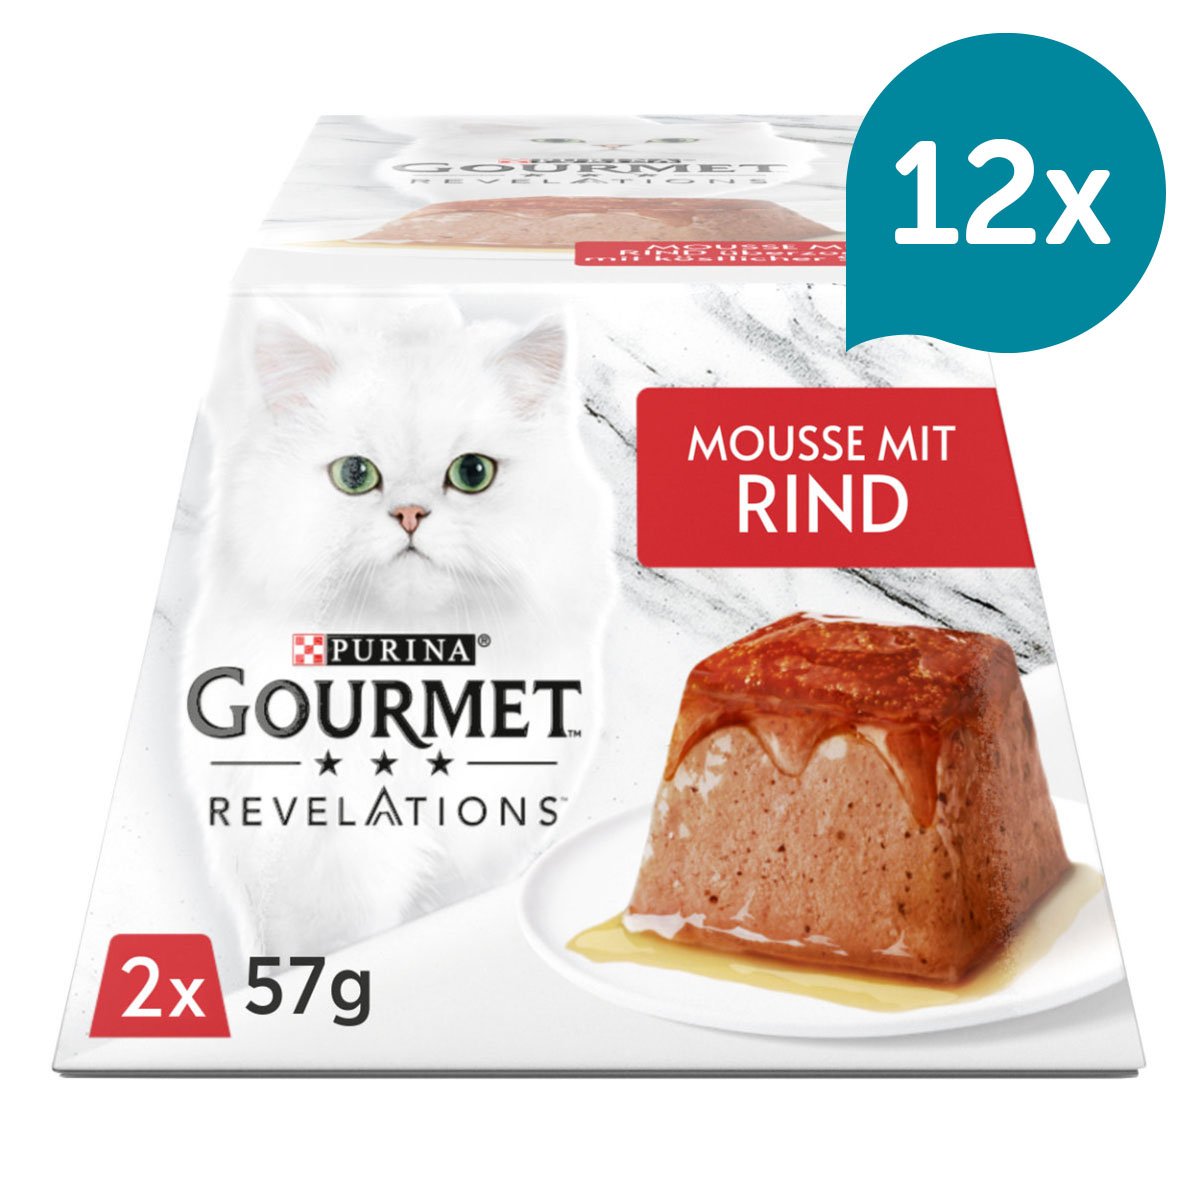 GOURMET Revelations Mousse in Sauce mit Rind 12x2x57g von Gourmet